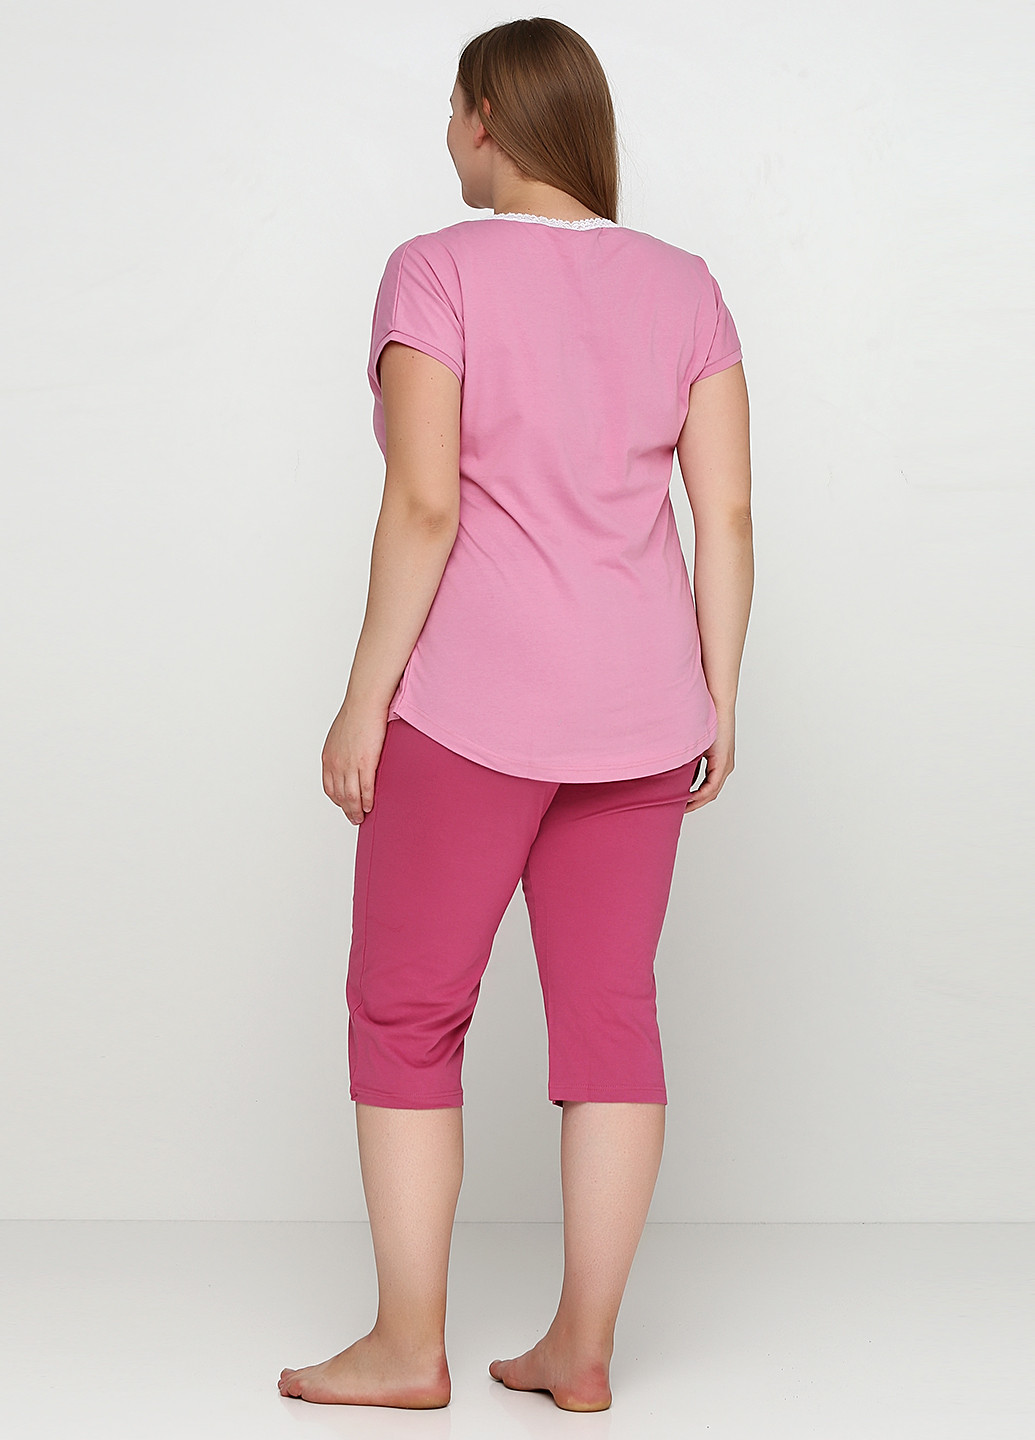 Розовый демисезонный комплект (футболка, капри) Роза